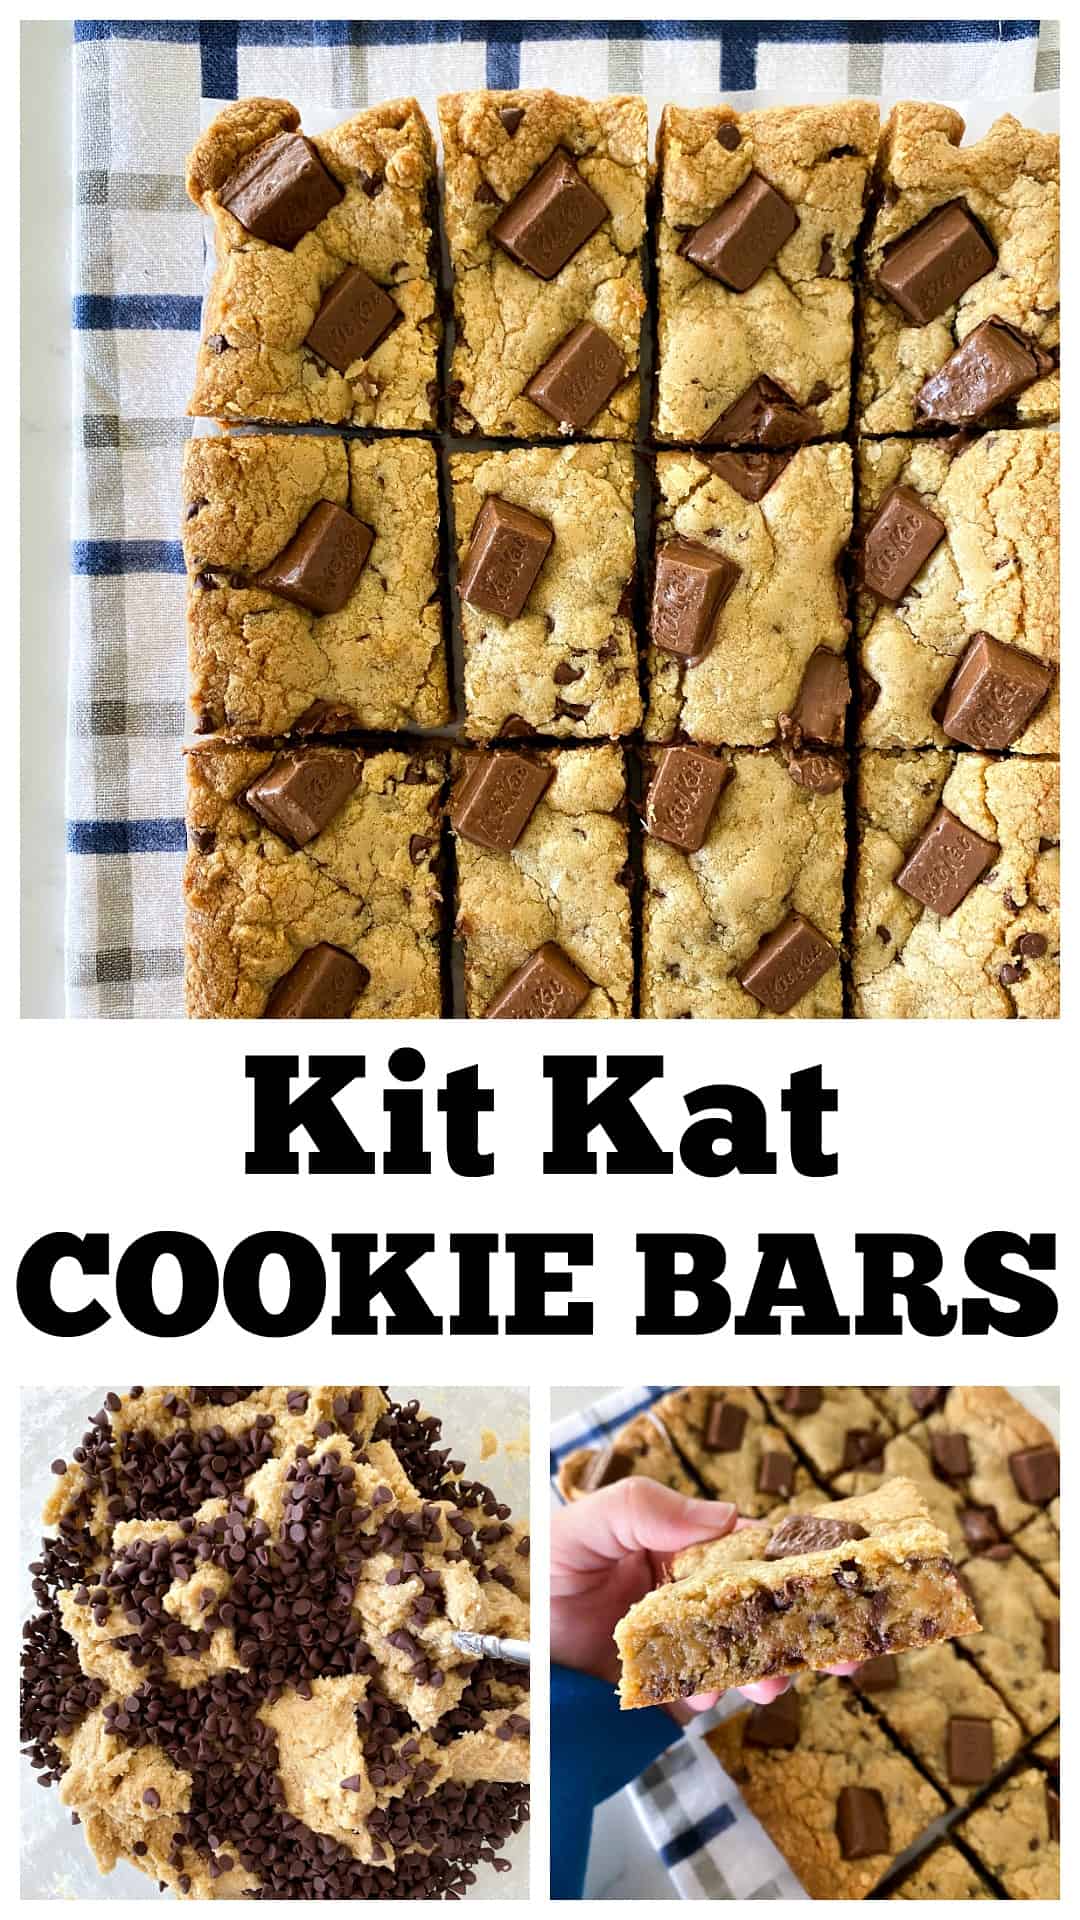 photo collage of kit kat bars